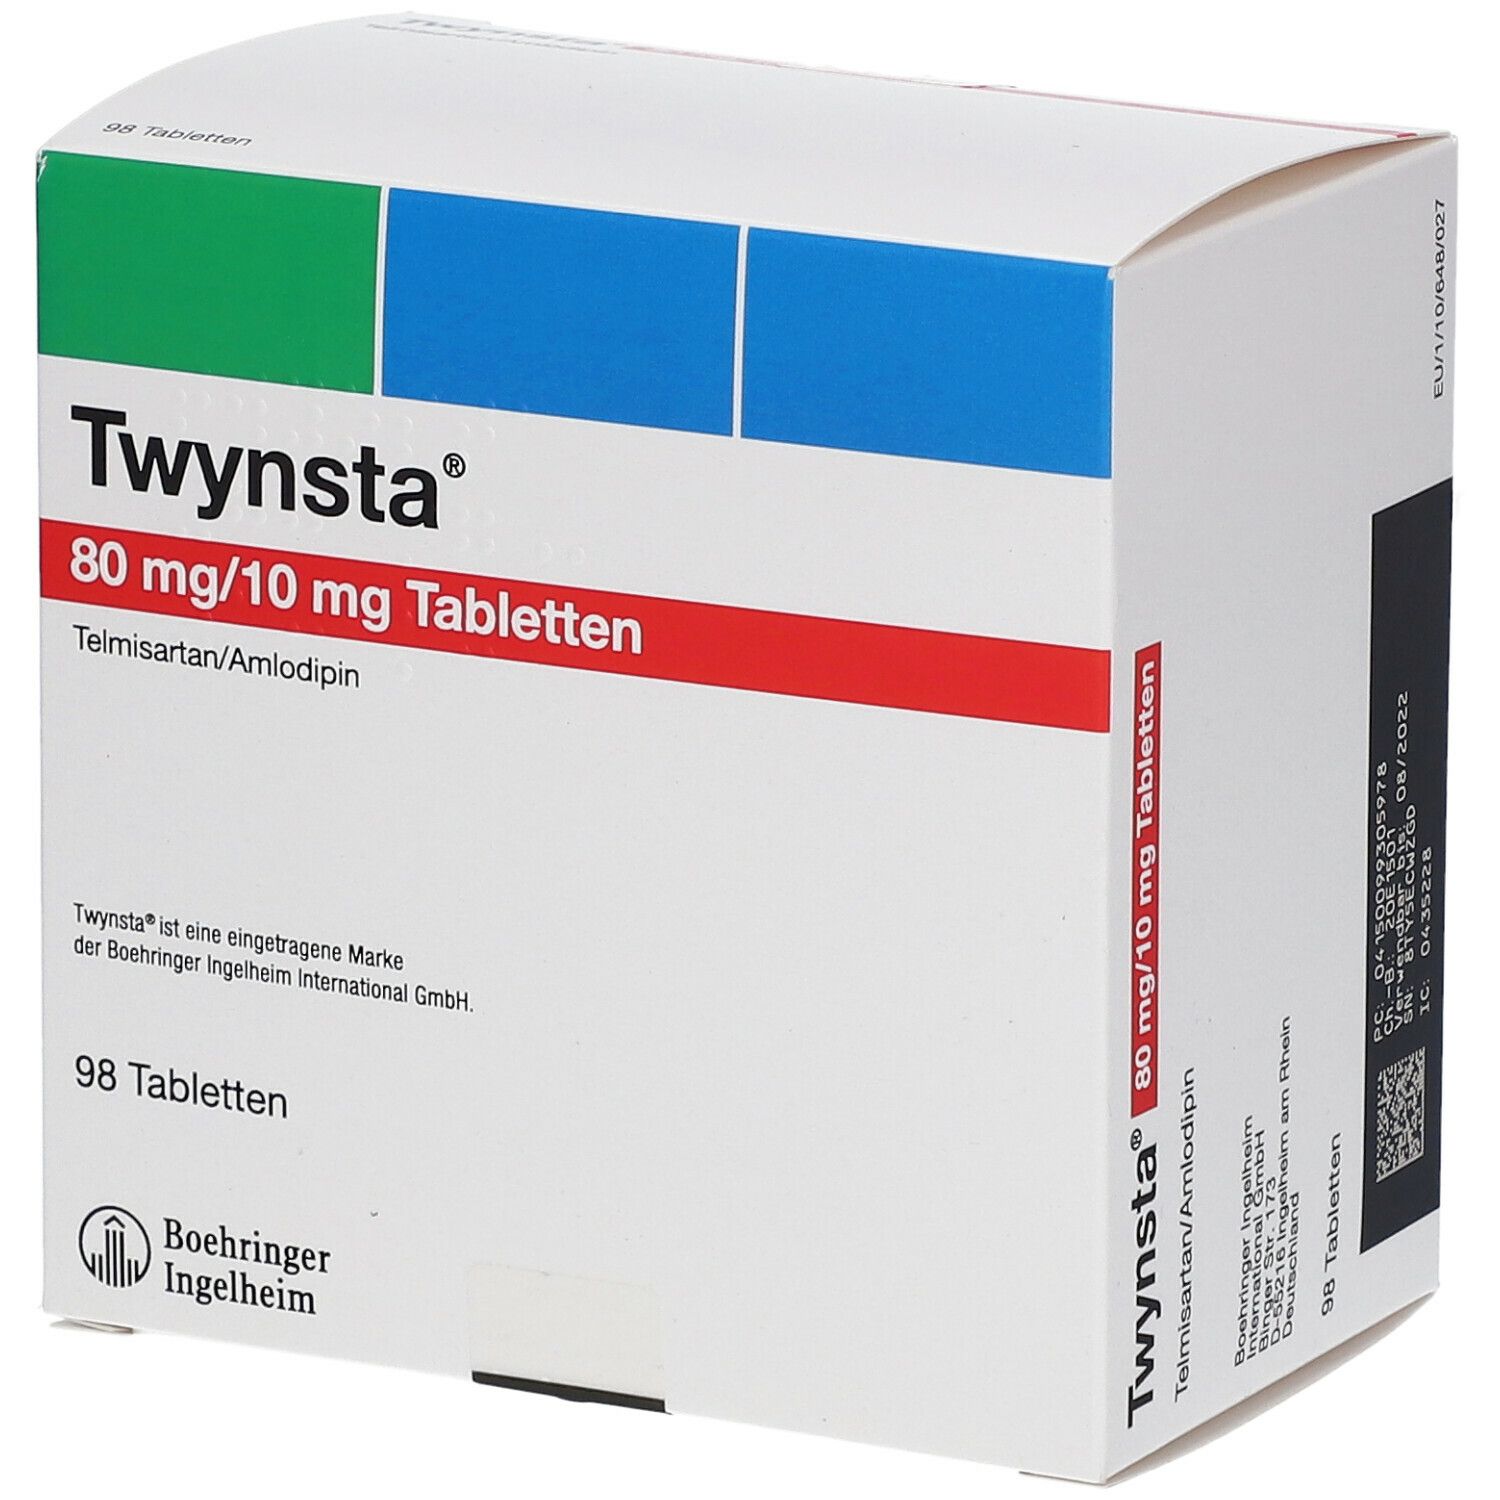 Twynsta 80 mg/10 mg